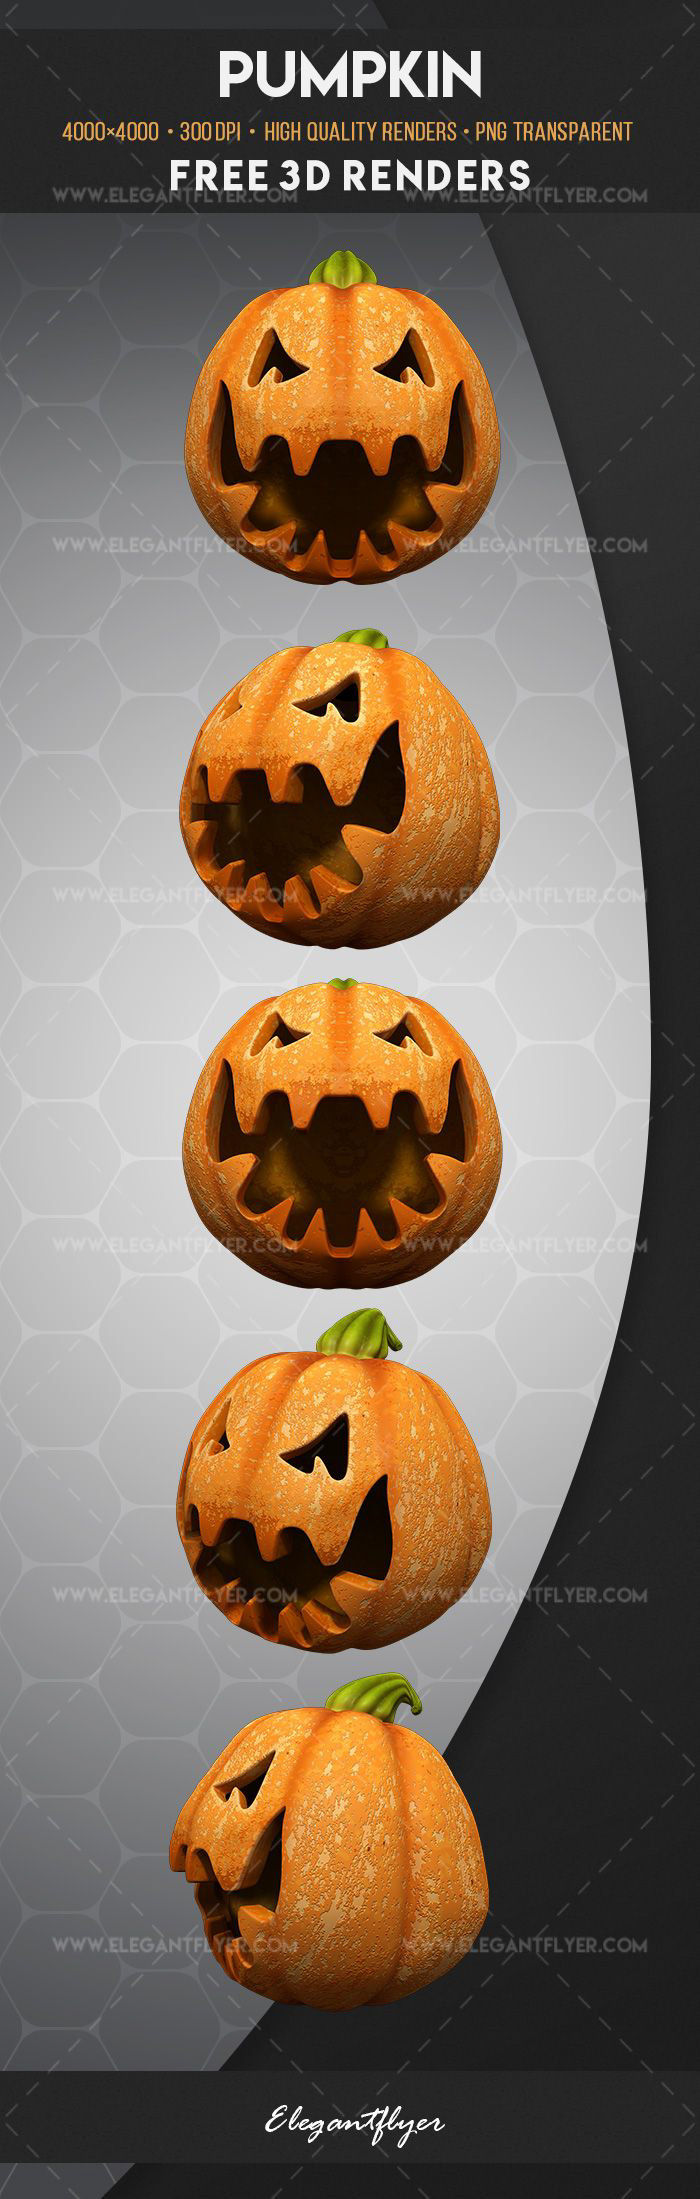 3D Halloween pumpkin Render